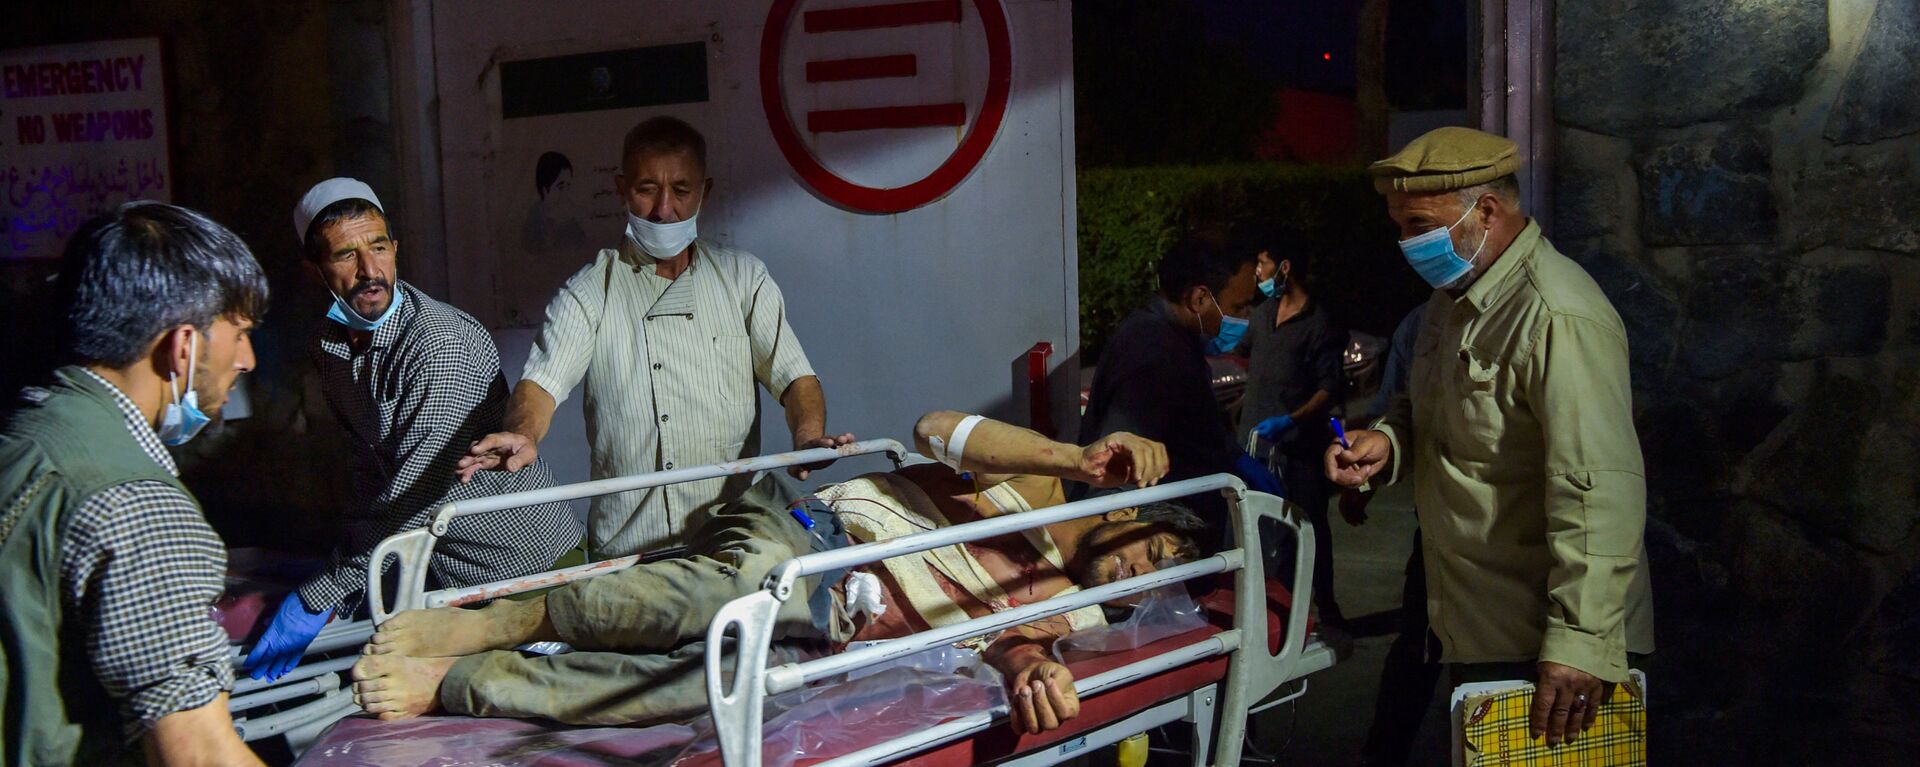 Медики помогают пострадавшим от двух мощных взрывов, произошедших в Кабуле - Sputnik Тоҷикистон, 1920, 02.11.2021